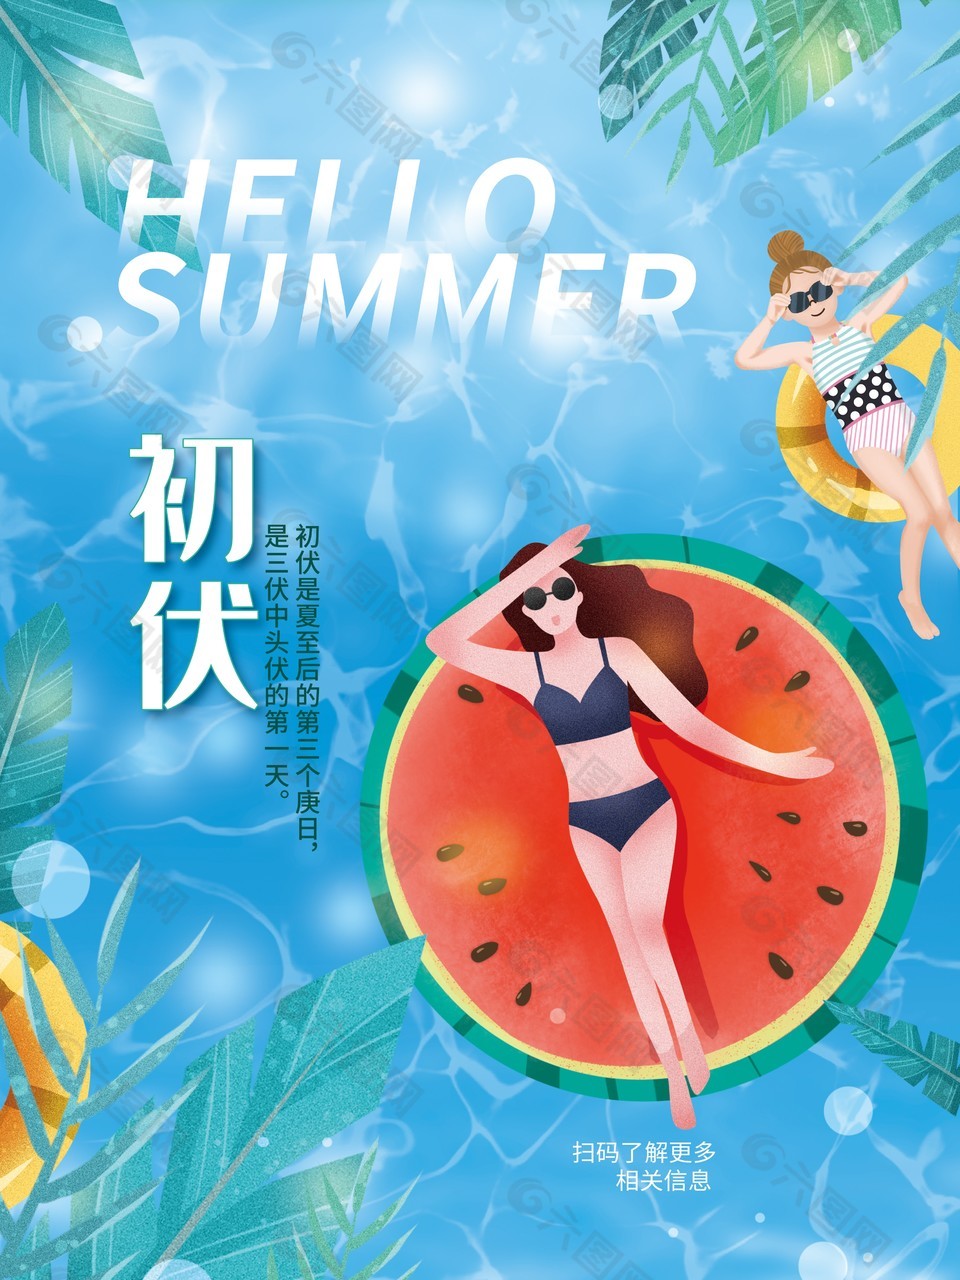 暑热时节初伏天蓝色插画海报设计